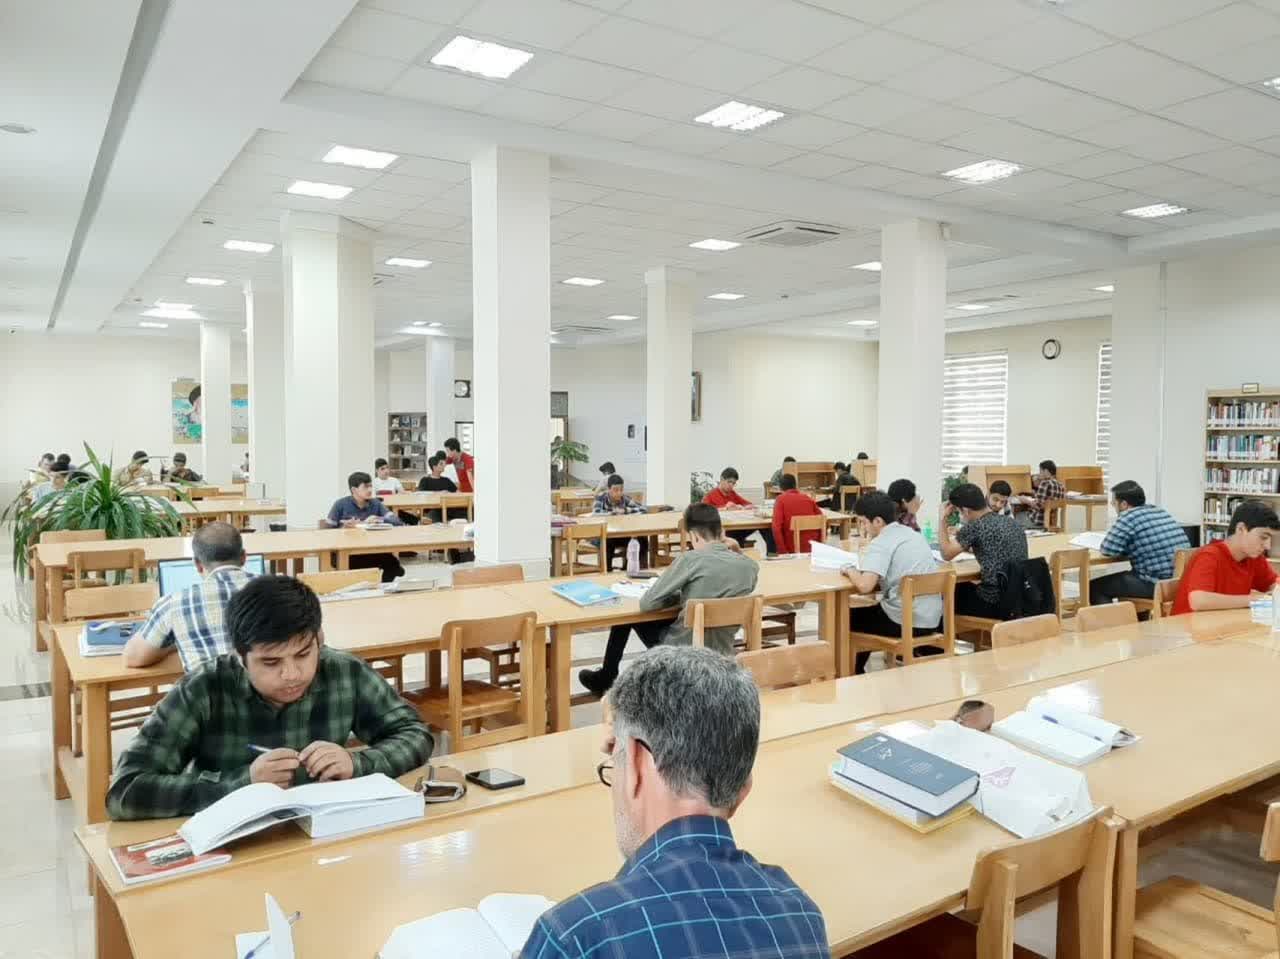 ارائه خدمات به 175 هزار عضو کتابخانه وابسته به آستان قدس رضوی در 27شهرستان 